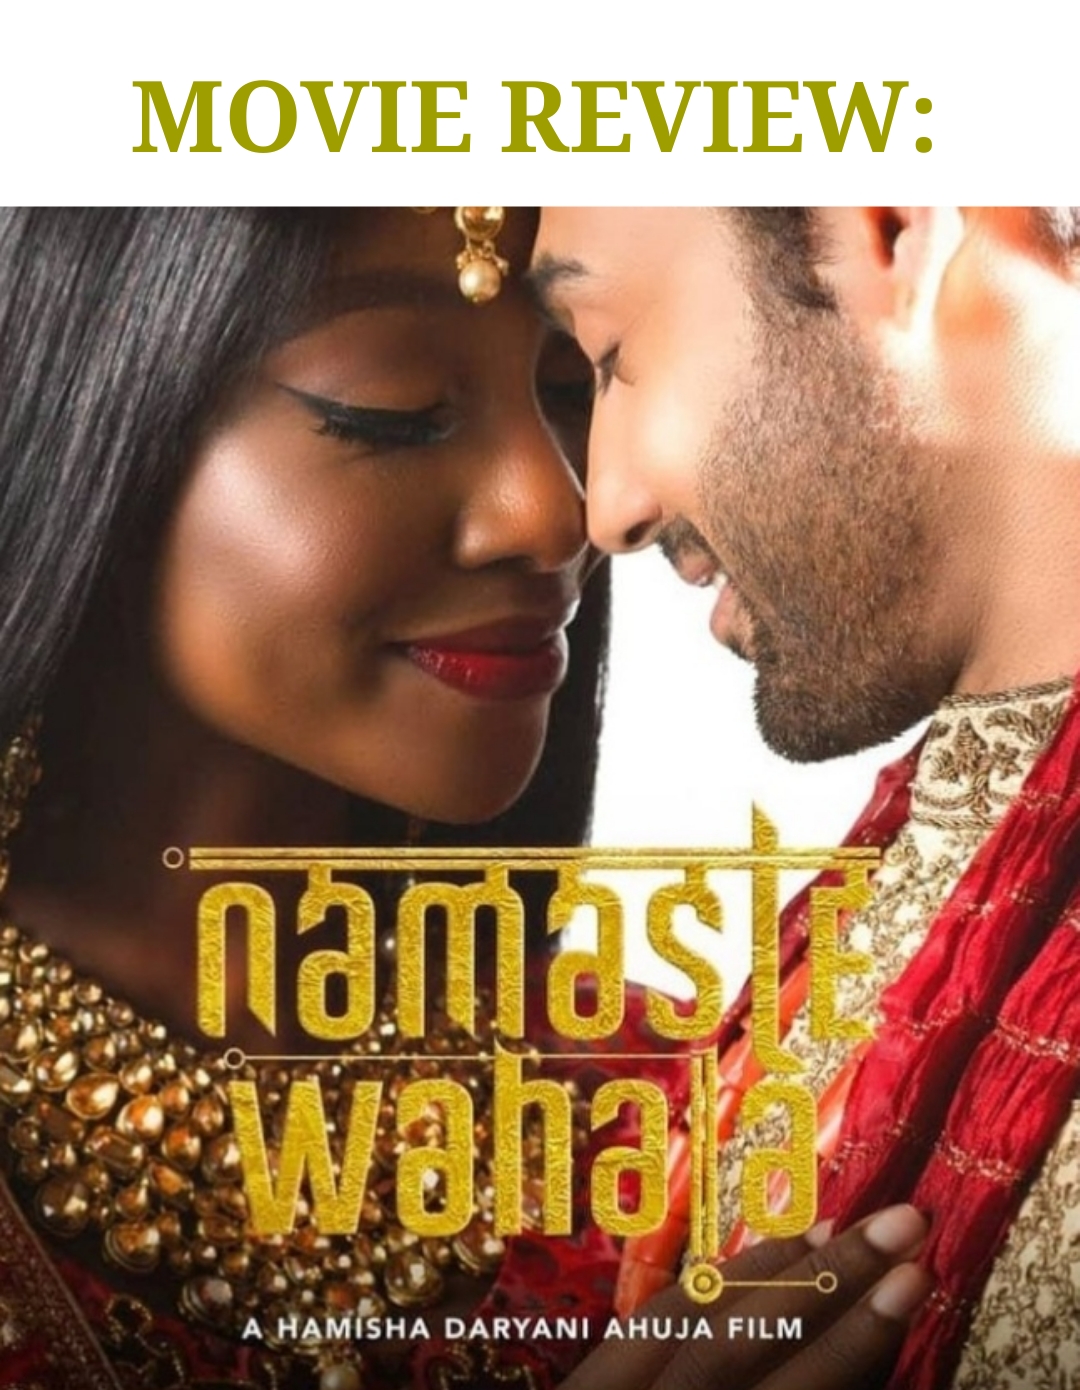 Movie Review: Namaste Wahala